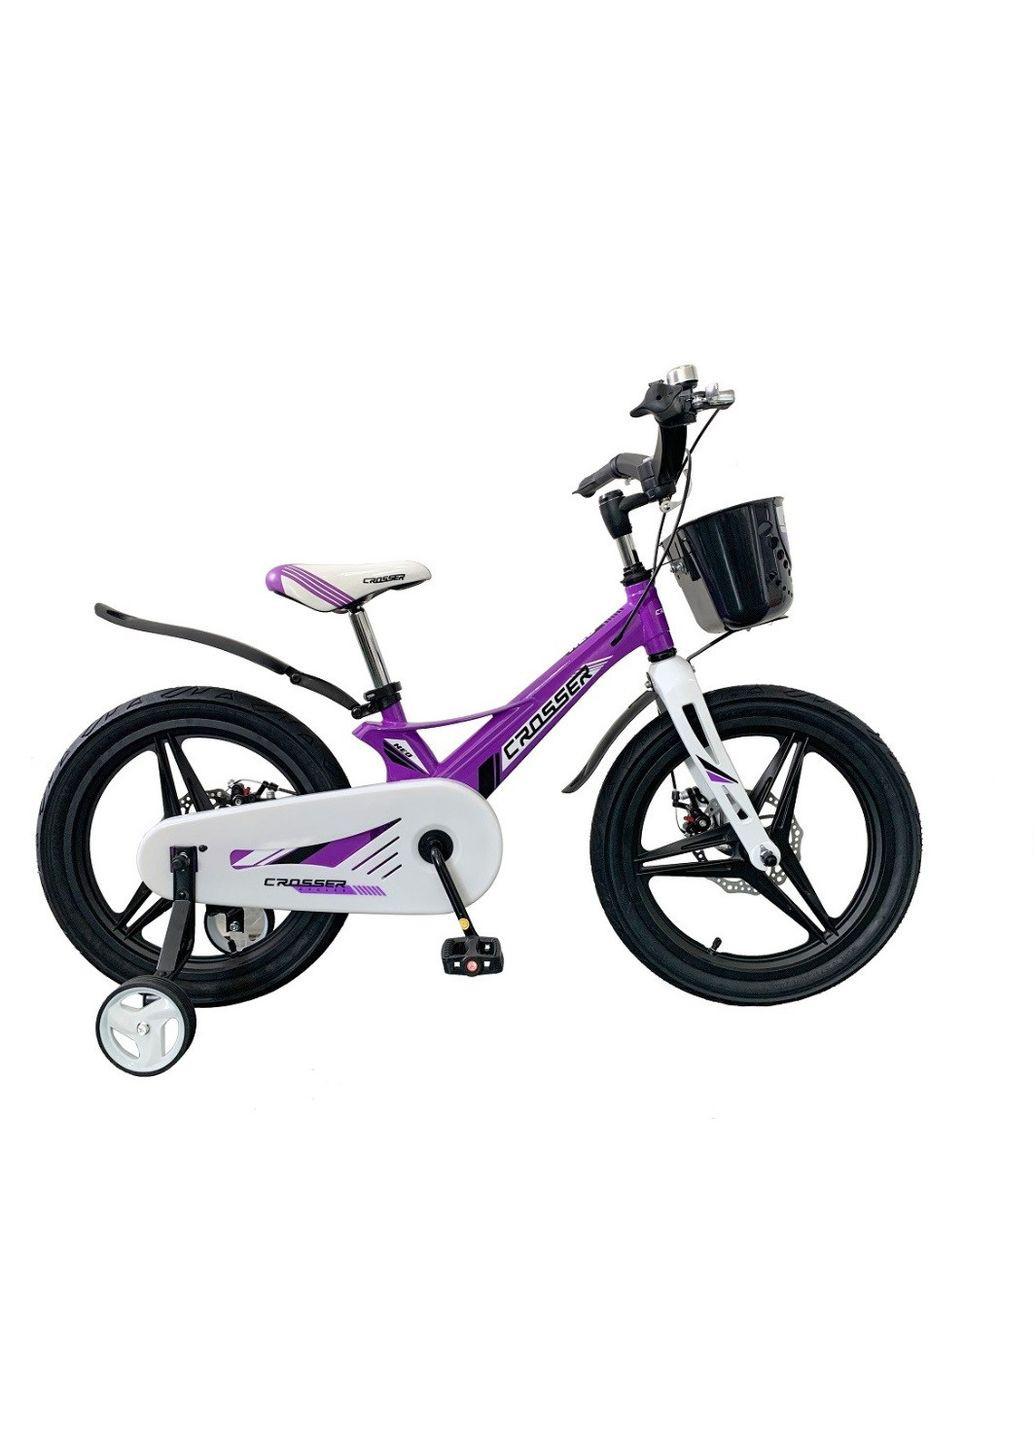 Детский велосипед HUNTER NEO Premium магниевый: стильный и надежный Фиолетовый, 18 Crosser (267810111)